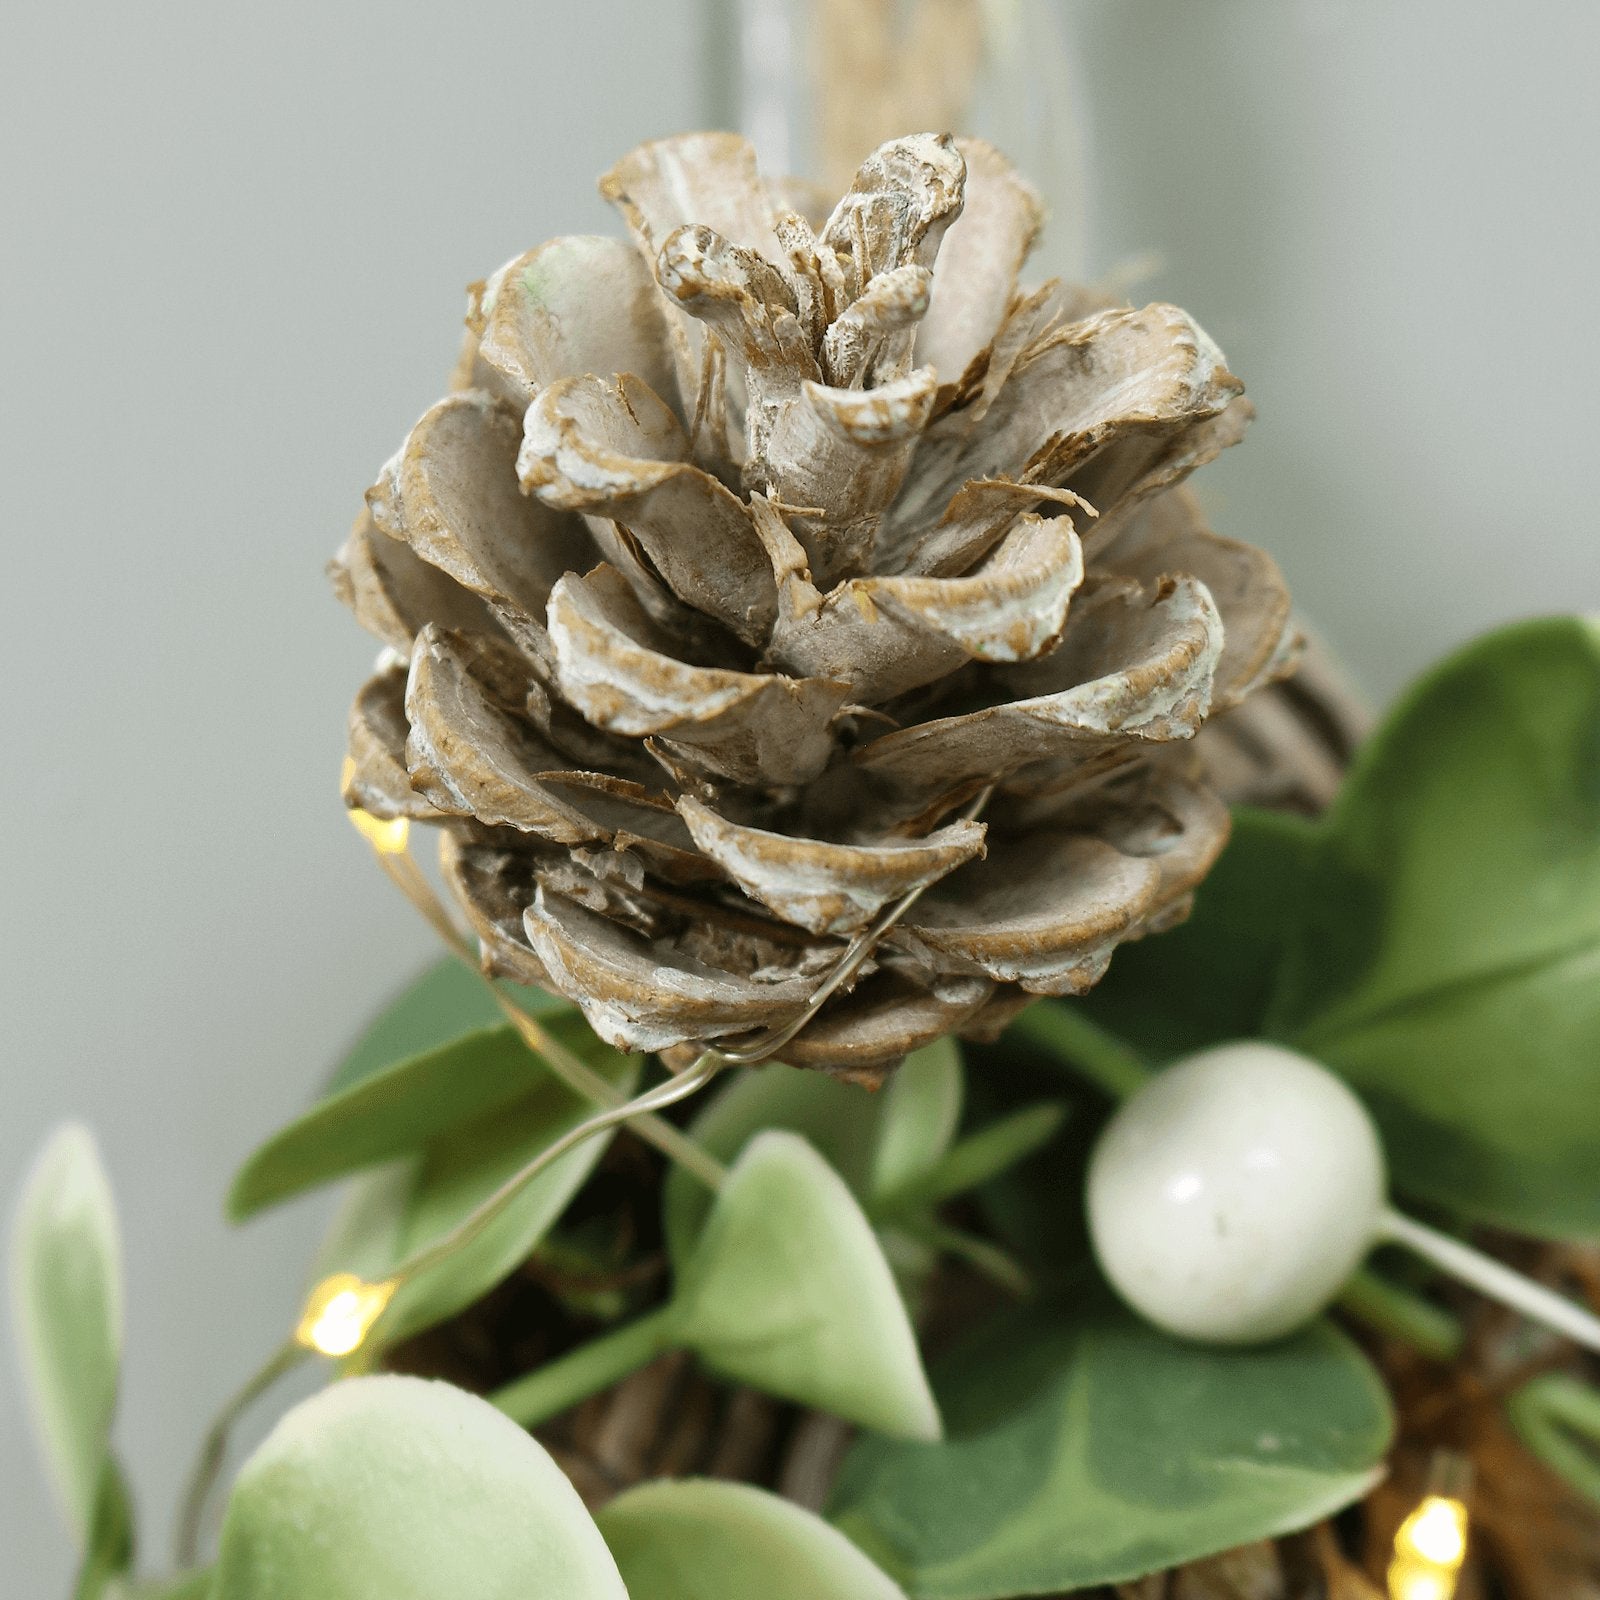 Mr Crimbo 30cm Twig Star Shaped Christmas Wreath Pine Cones - MrCrimbo.co.uk -XS7614 - -